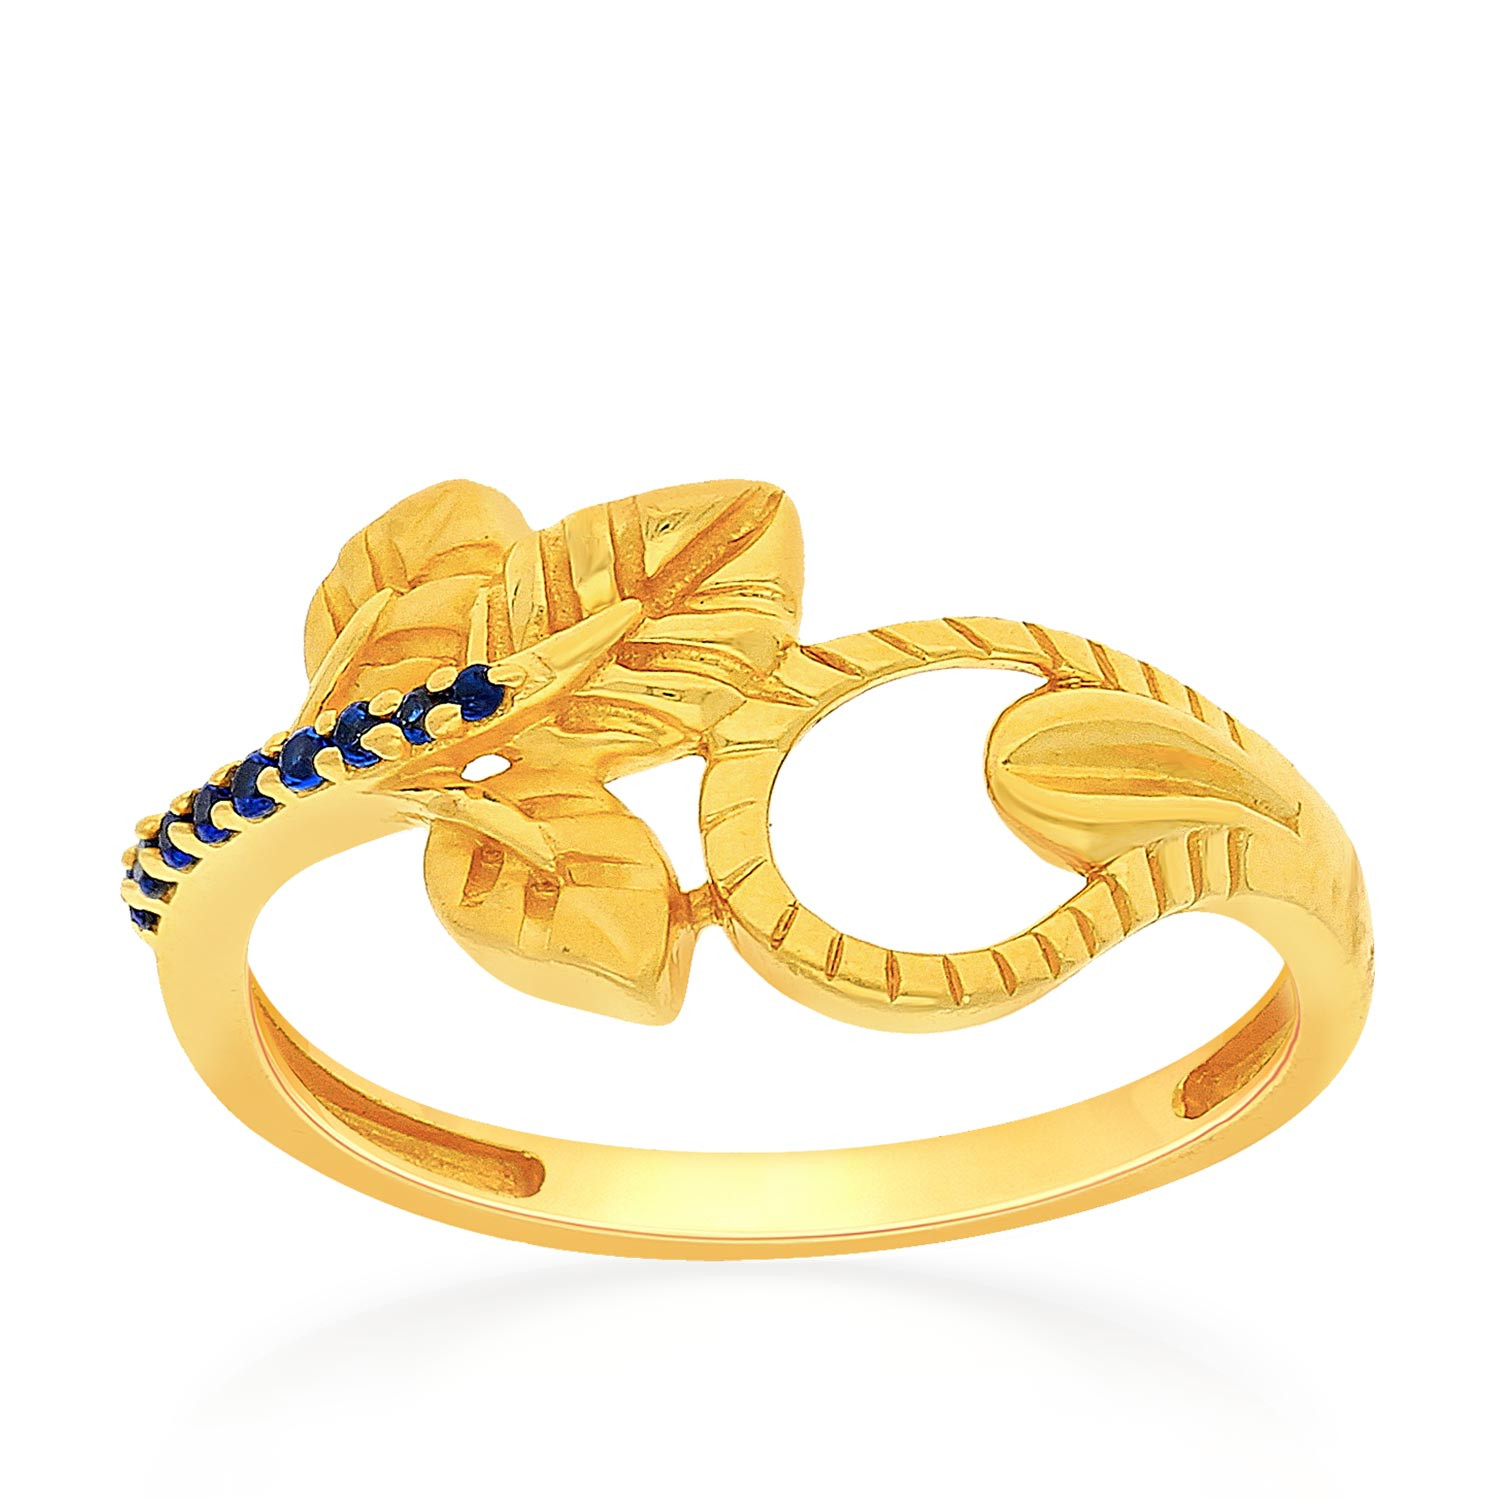 Gold Ring For Women ये हैं सोने की अंगूठी के लेटेस्ट डिजाइन जिनको महिलाएं  कर रही हैं सबसे ज्यादा पसंद - Gold Ring For Women: ये हैं सोने की अंगूठी के  लेटेस्ट